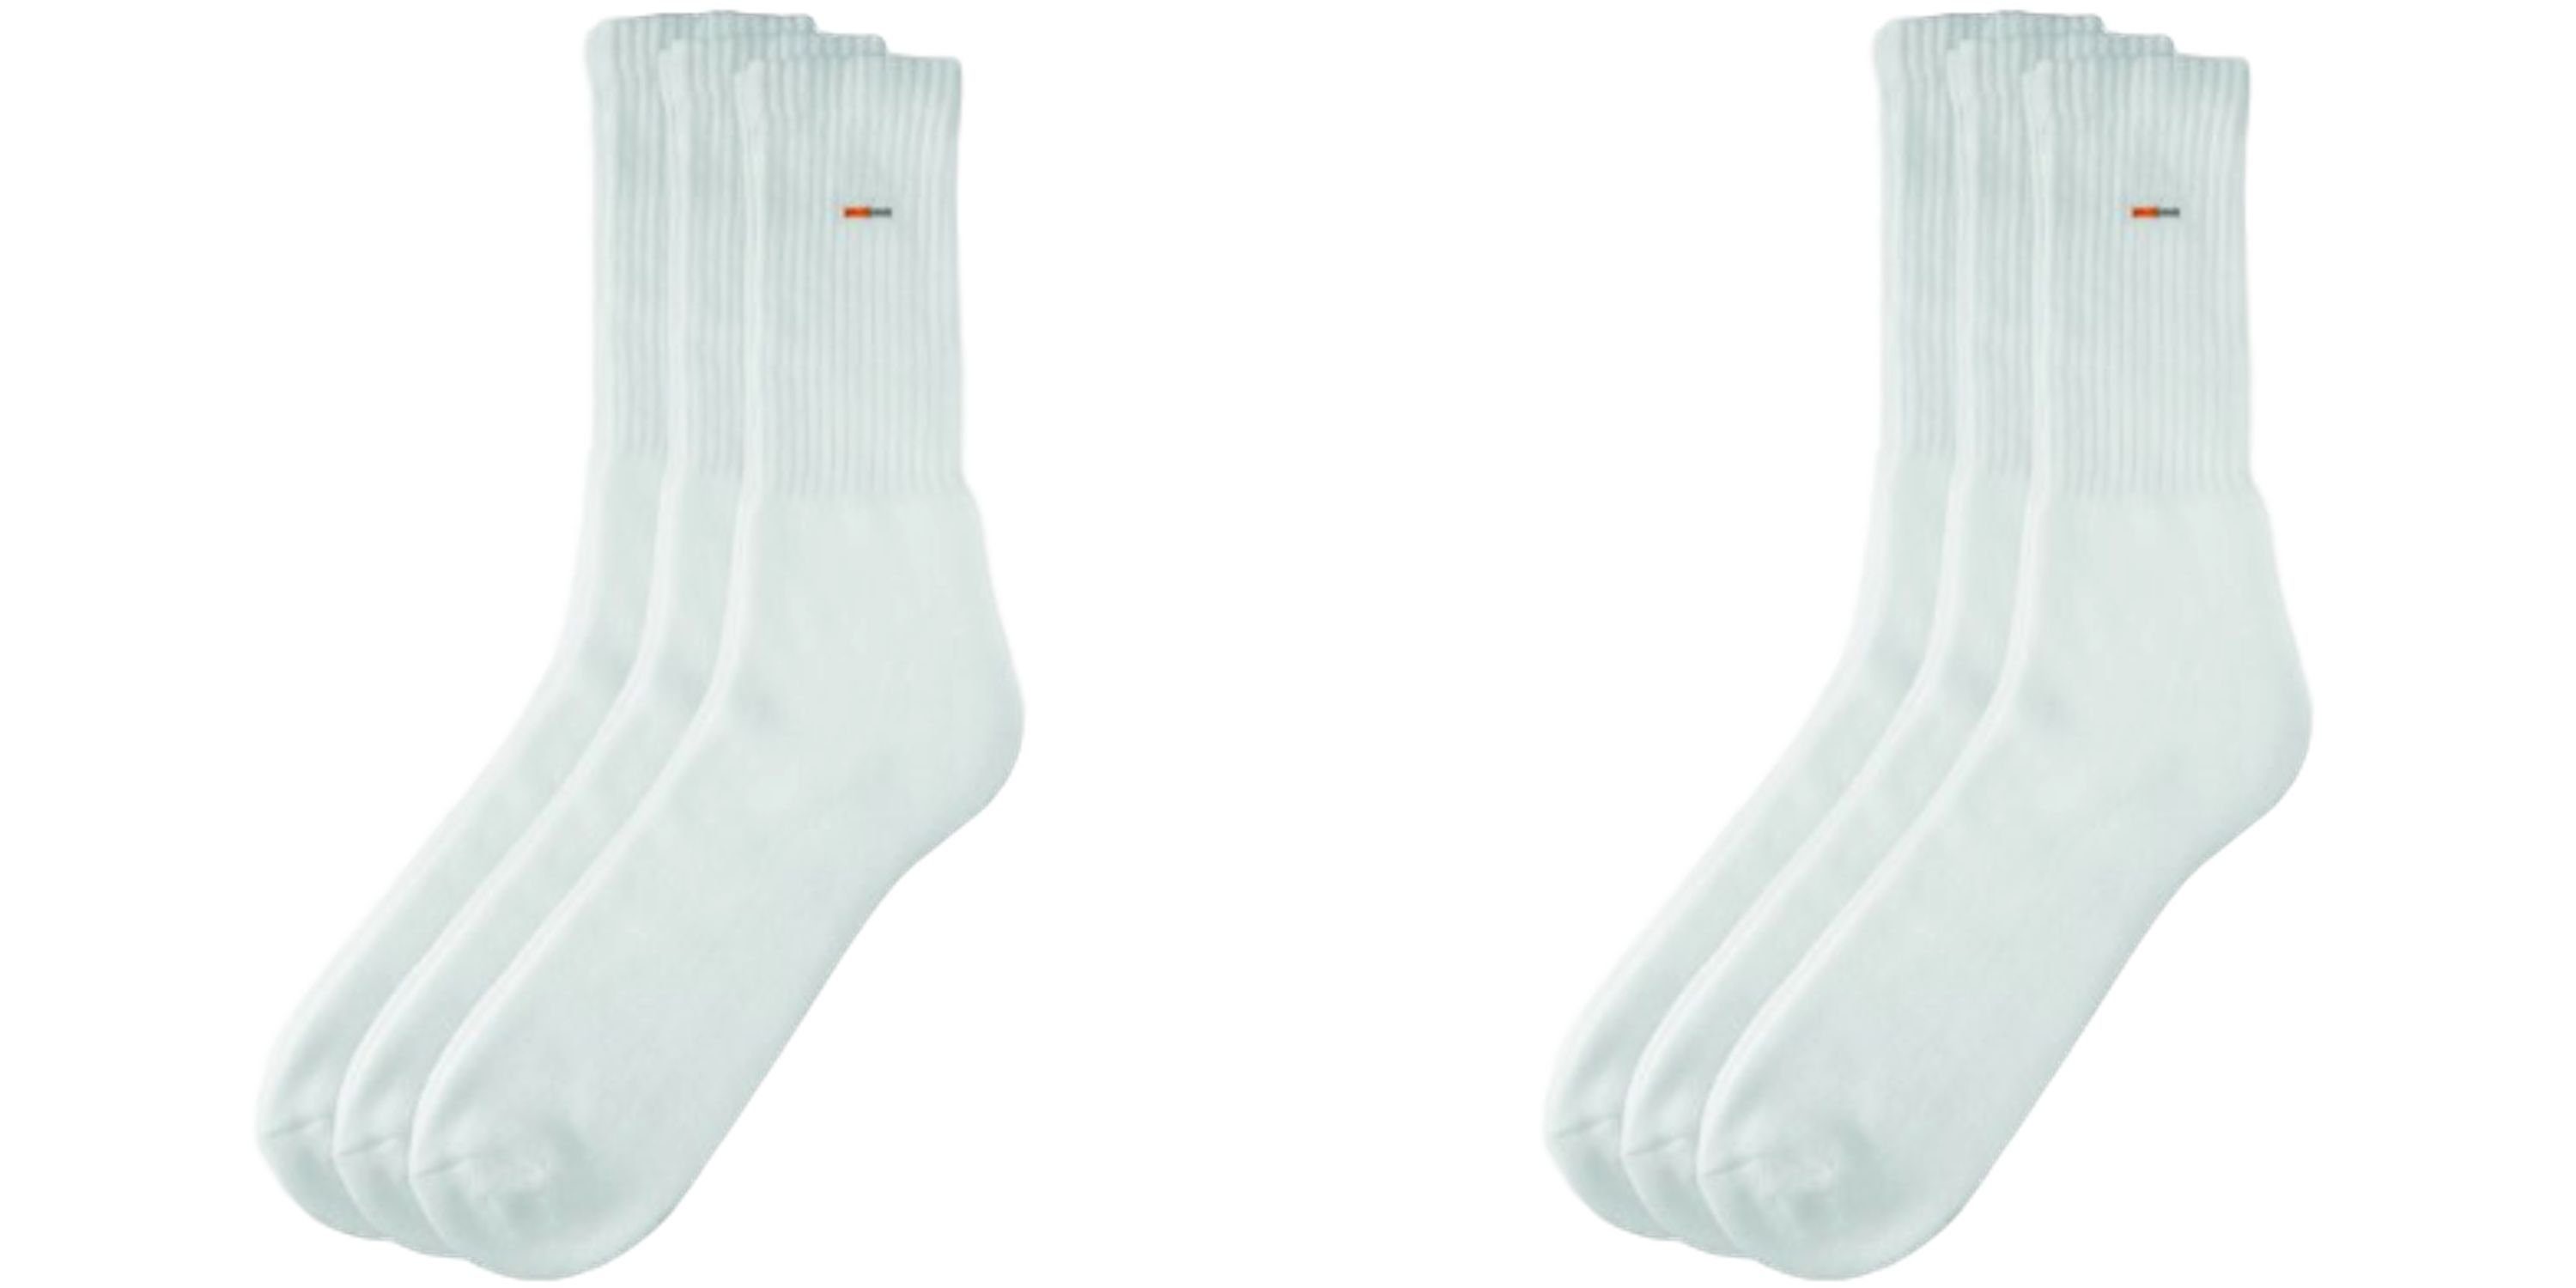 Camano Sportsocken Basic Socken Sportsocke (6-Paar) - Farbe: 6 Paar weiss - Größe: 35 - 38 A11 6 Paar weiss